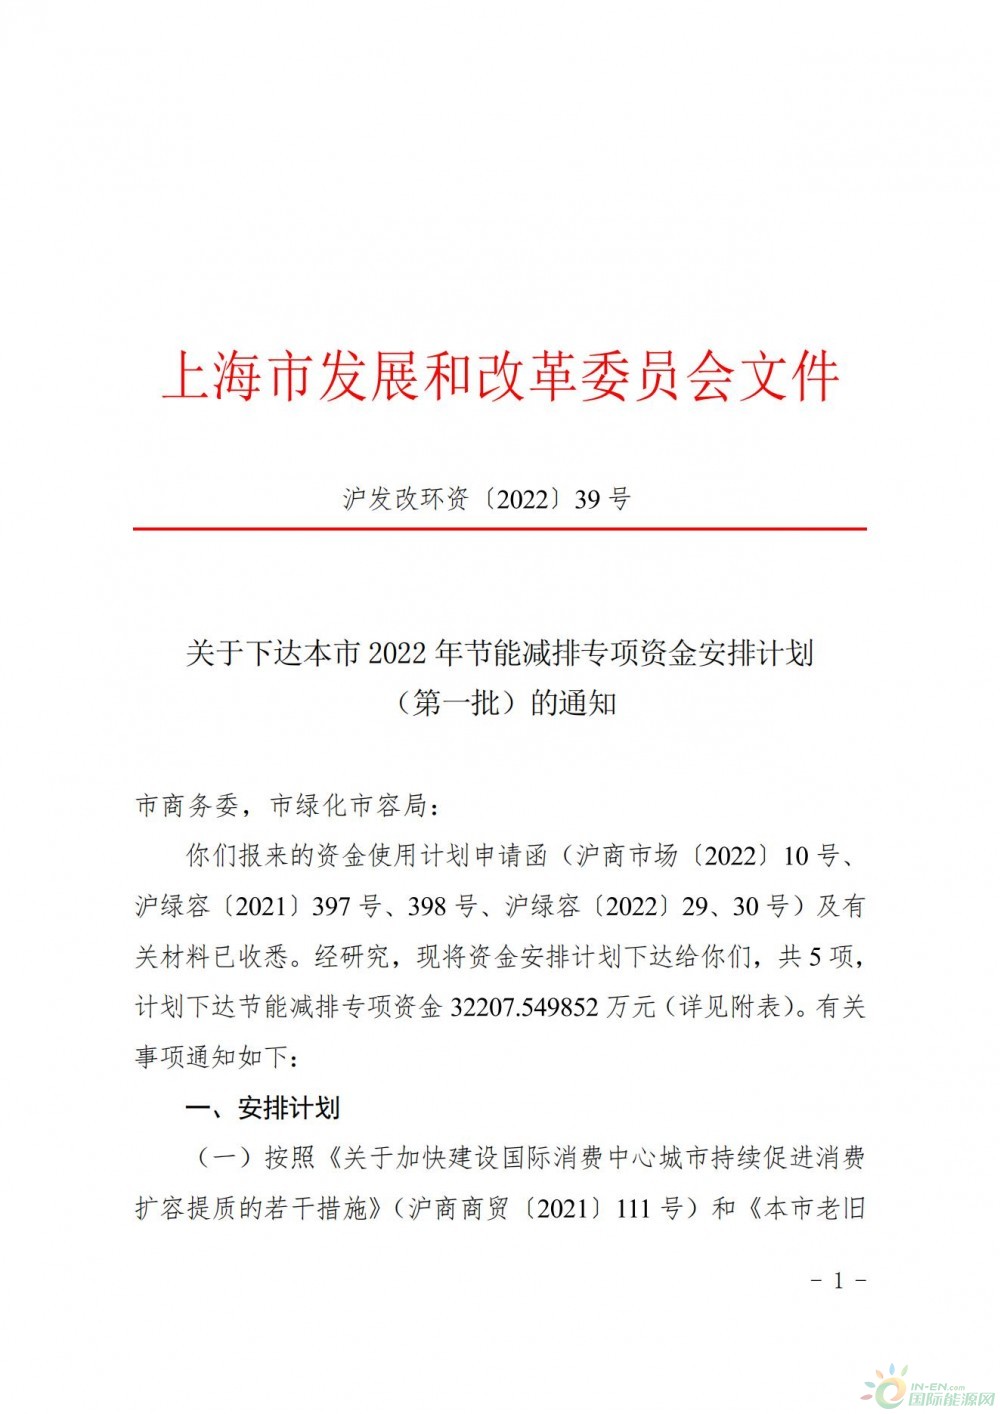 分布式光伏奖励1.6亿（首批）！上海下达2022年节能减排专项资金安排计划！